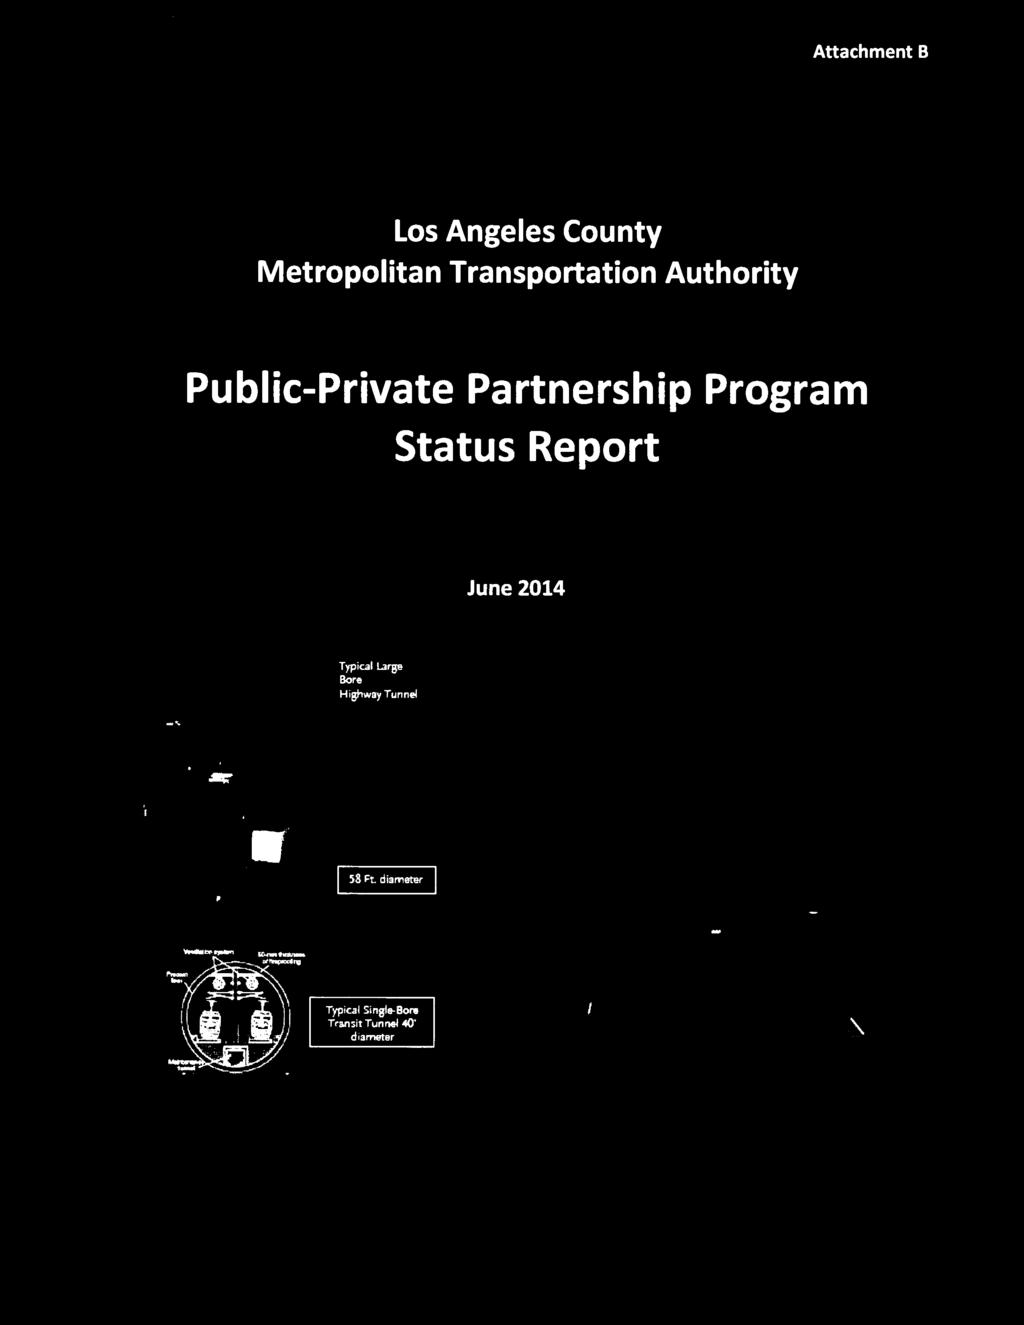 Program Status Report June